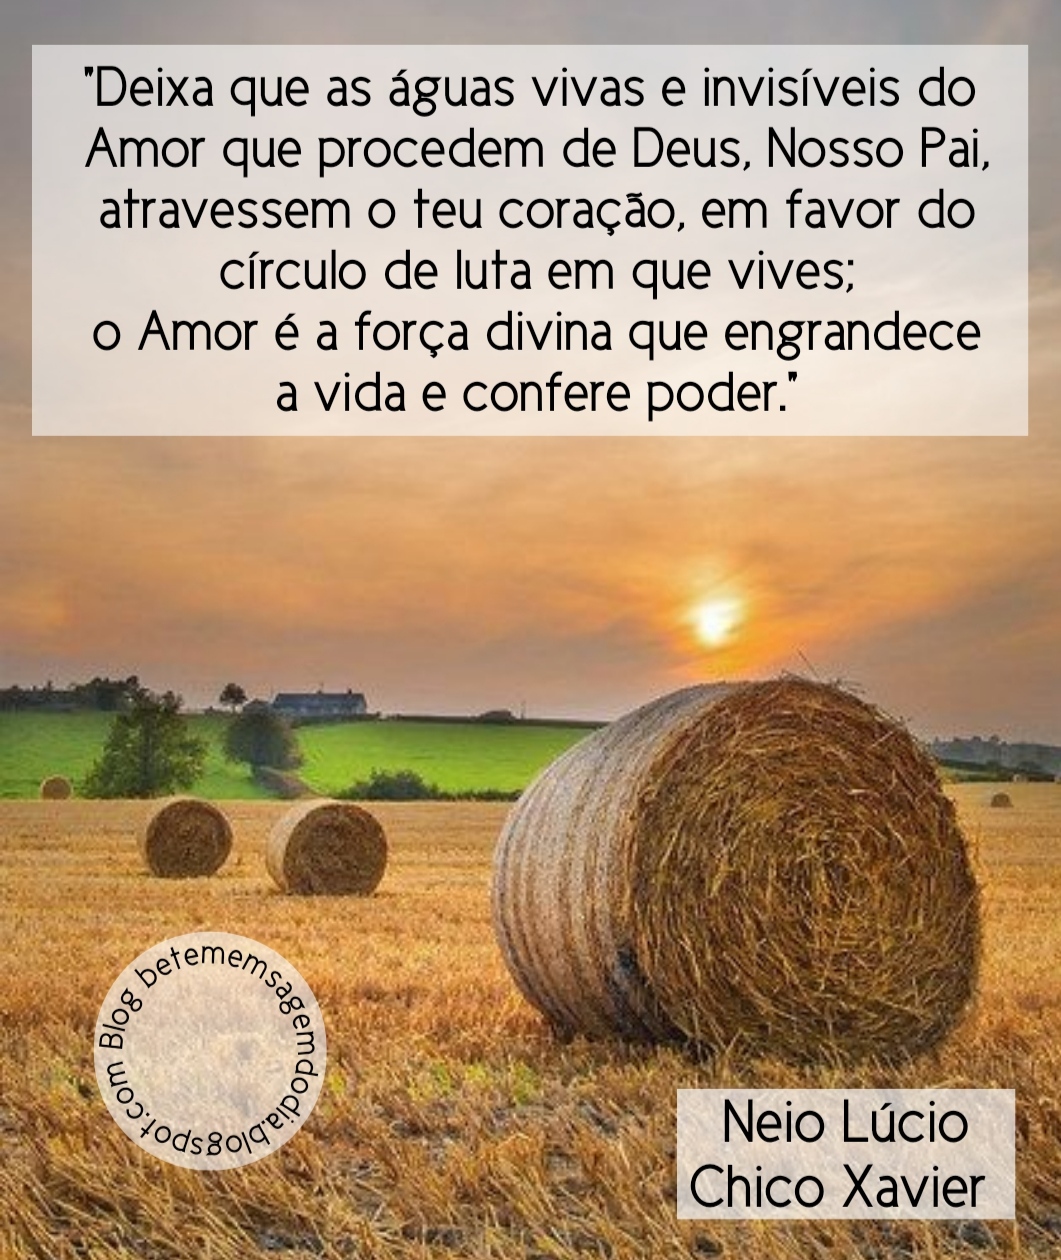 ALEGRIA DE VIVER E AMAR O QUE É BOM!!: DIÁRIO ESPIRITUAL #116 - 01/08 -  Render-se a Deus